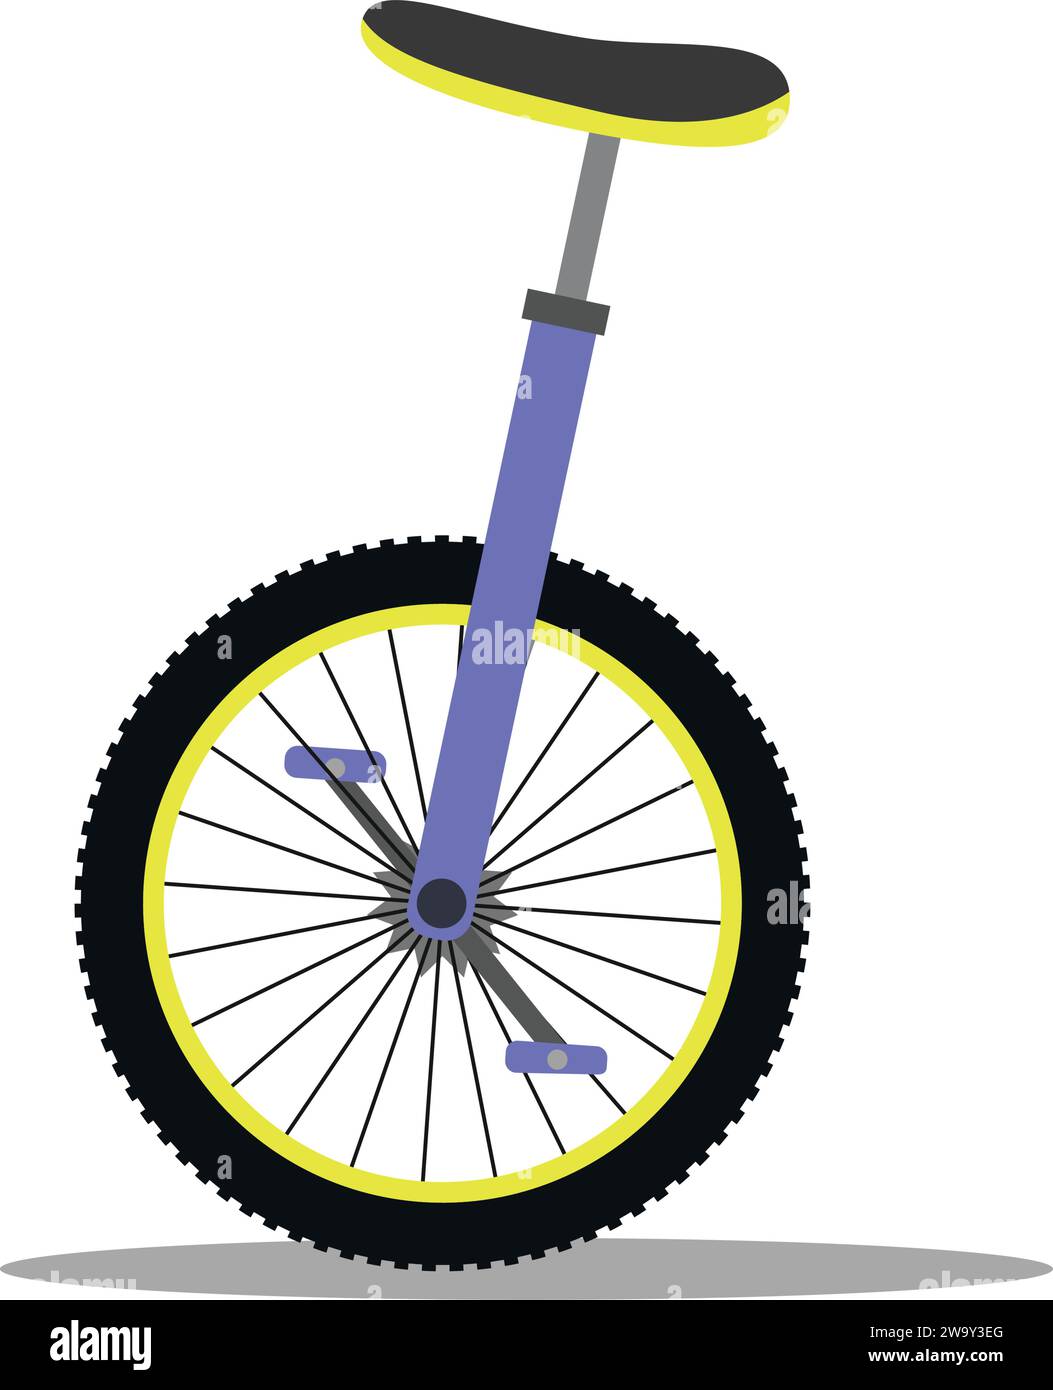 Monociclo: la otra revolución de la rueda